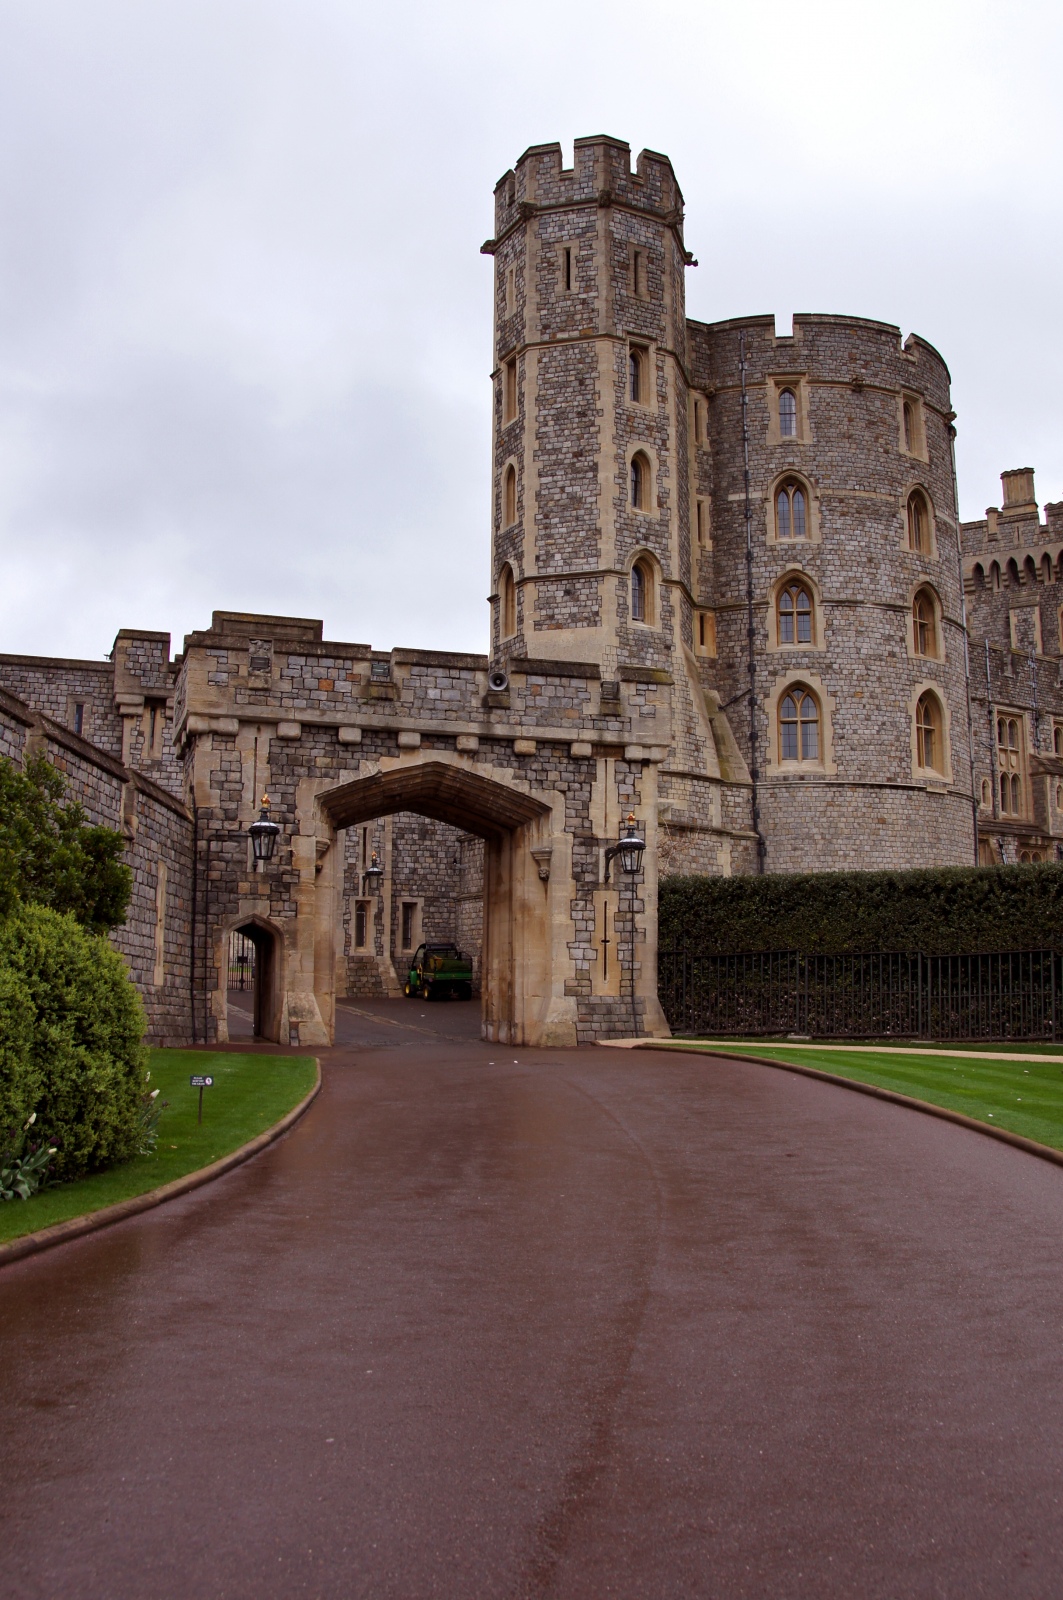 Entrance to Windsor Castle